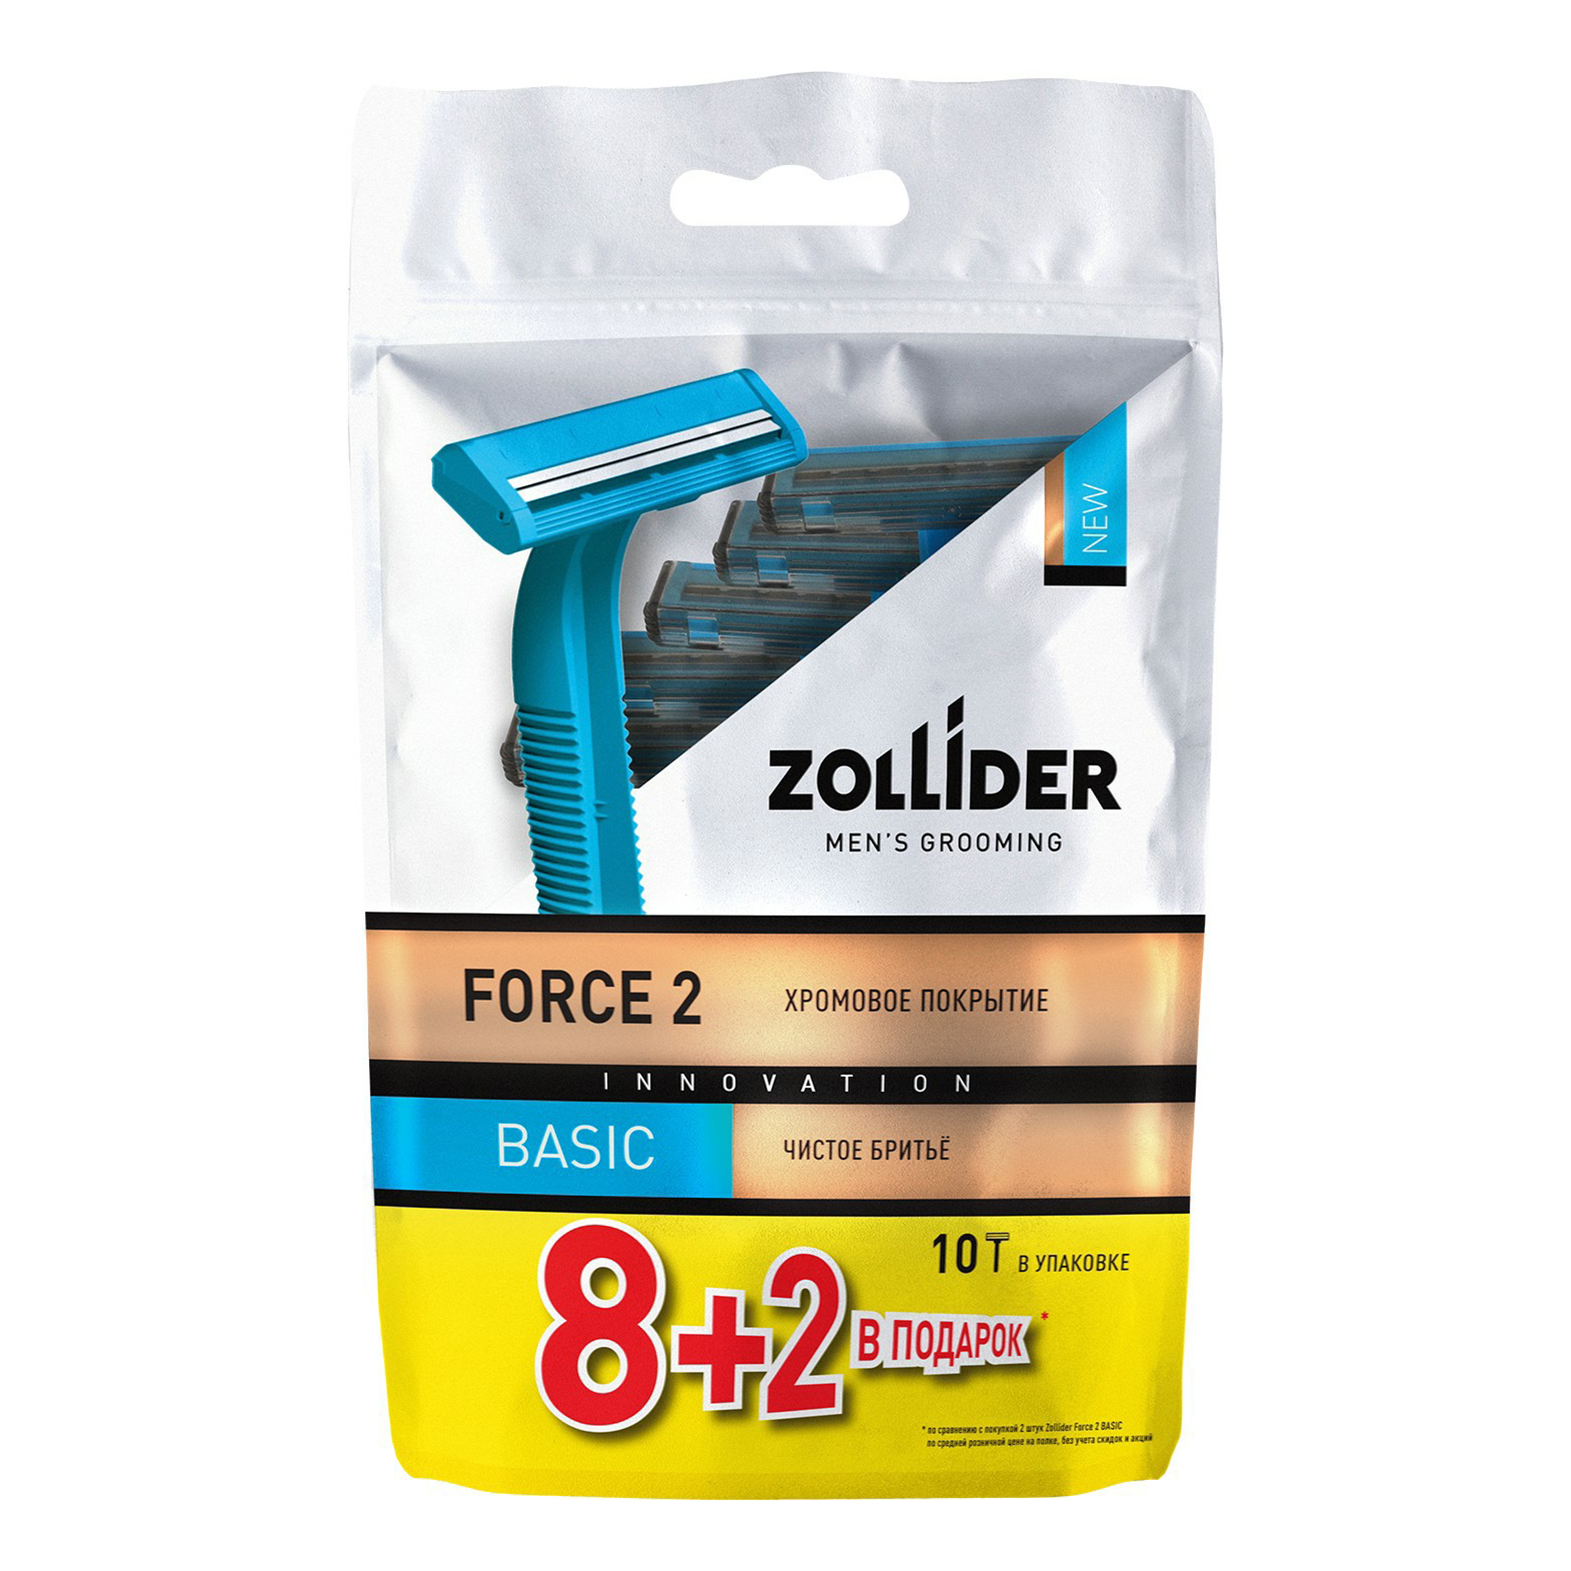 Бритвенные станки мужские Zollider Force 2 Basic одноразовые с двойными лезвиями 8 + 2 шт станки одноразовые для бритья джигит blue 3 5 шт